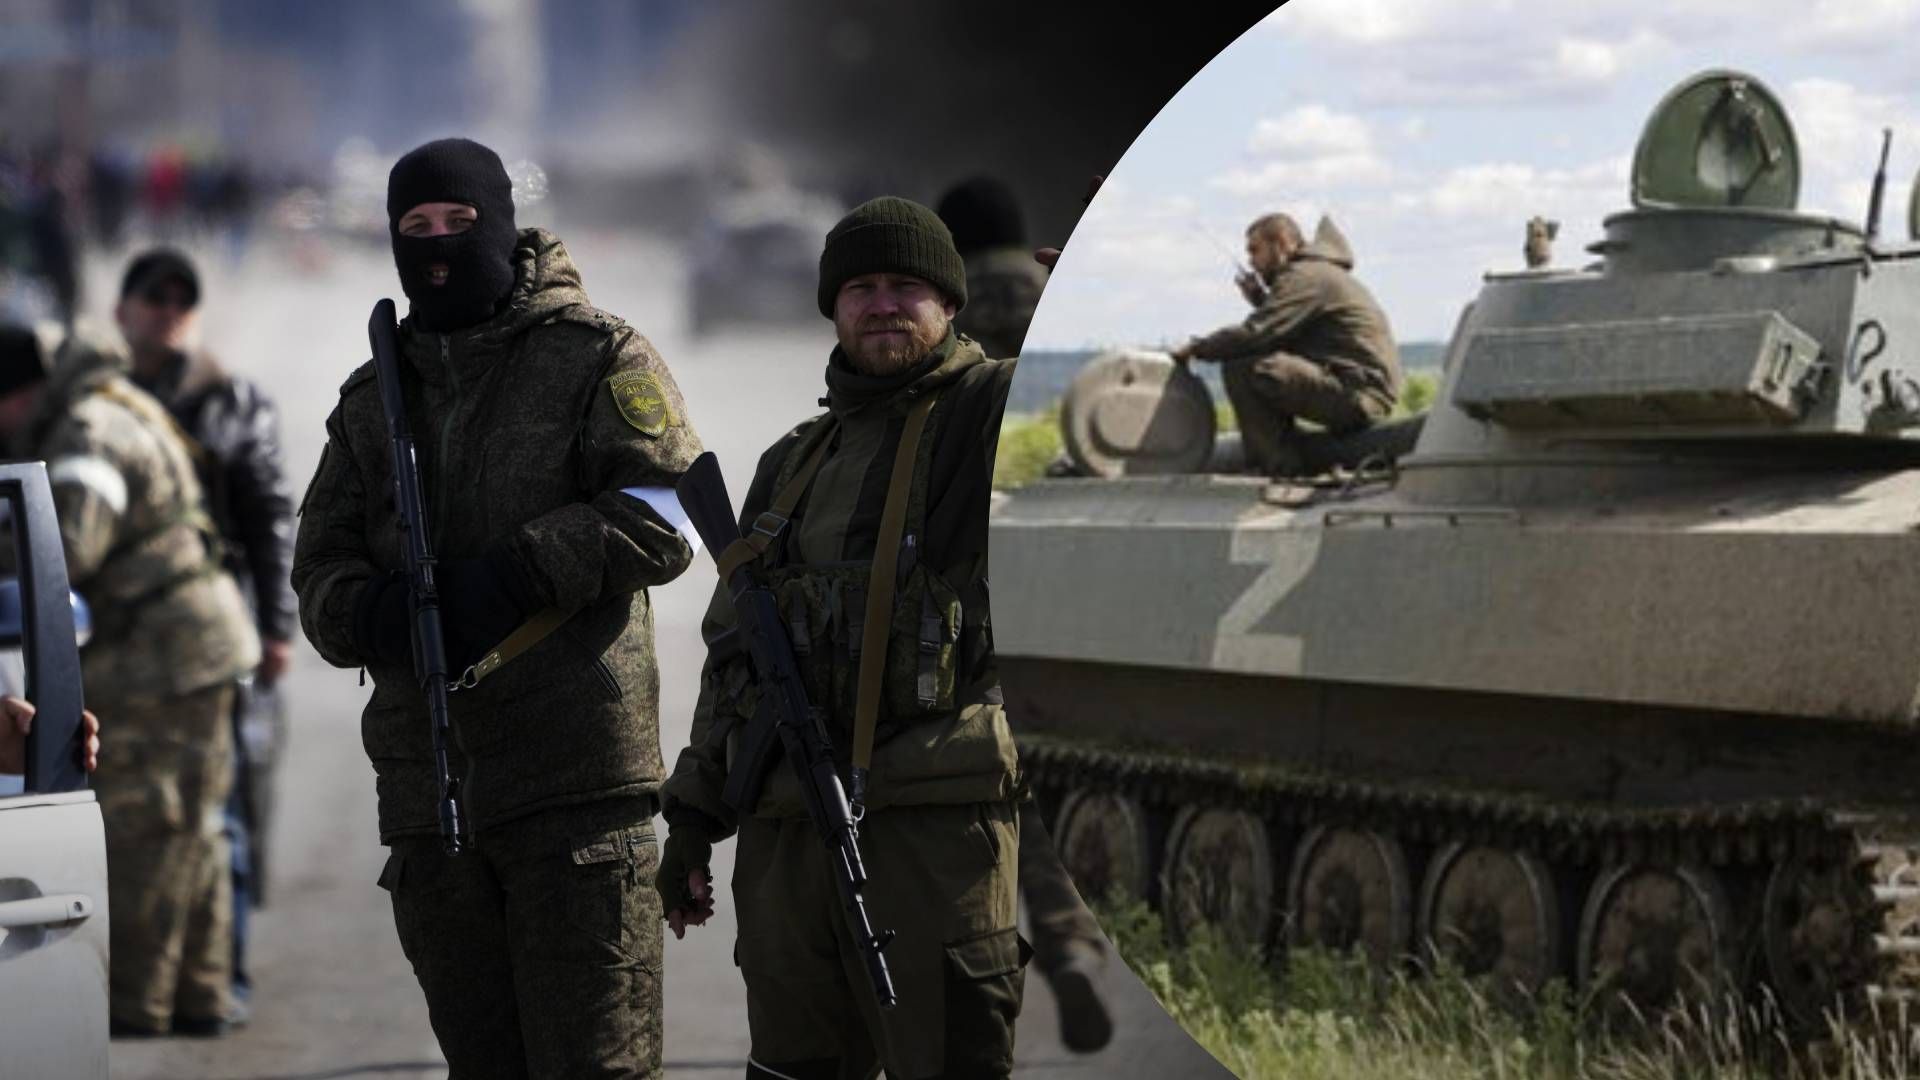 Одна из российских ЧВК оказалась теневой армией ГРУ, - расследование СМИ - 24 Канал